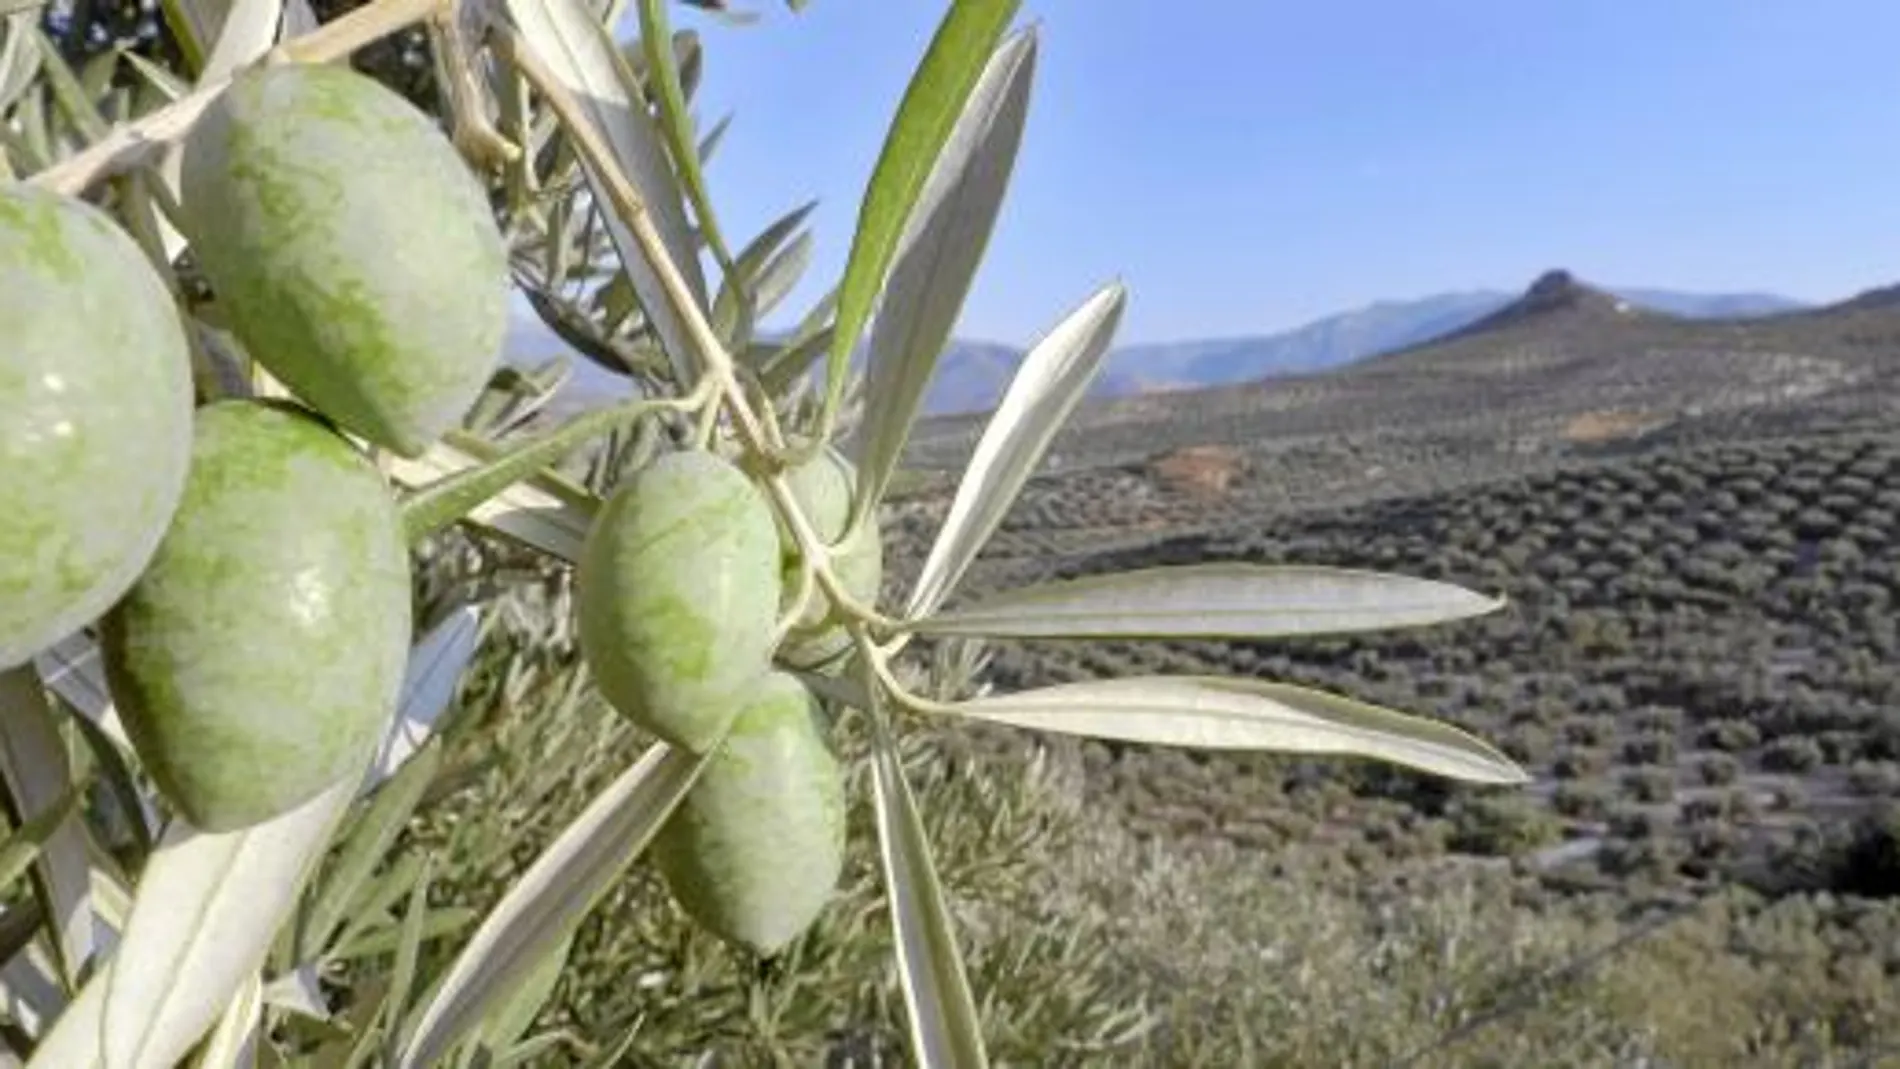 La nueva central de biomasa Kurata se ha construido en Cañete de las Torres, una localidad rodeada de olivos